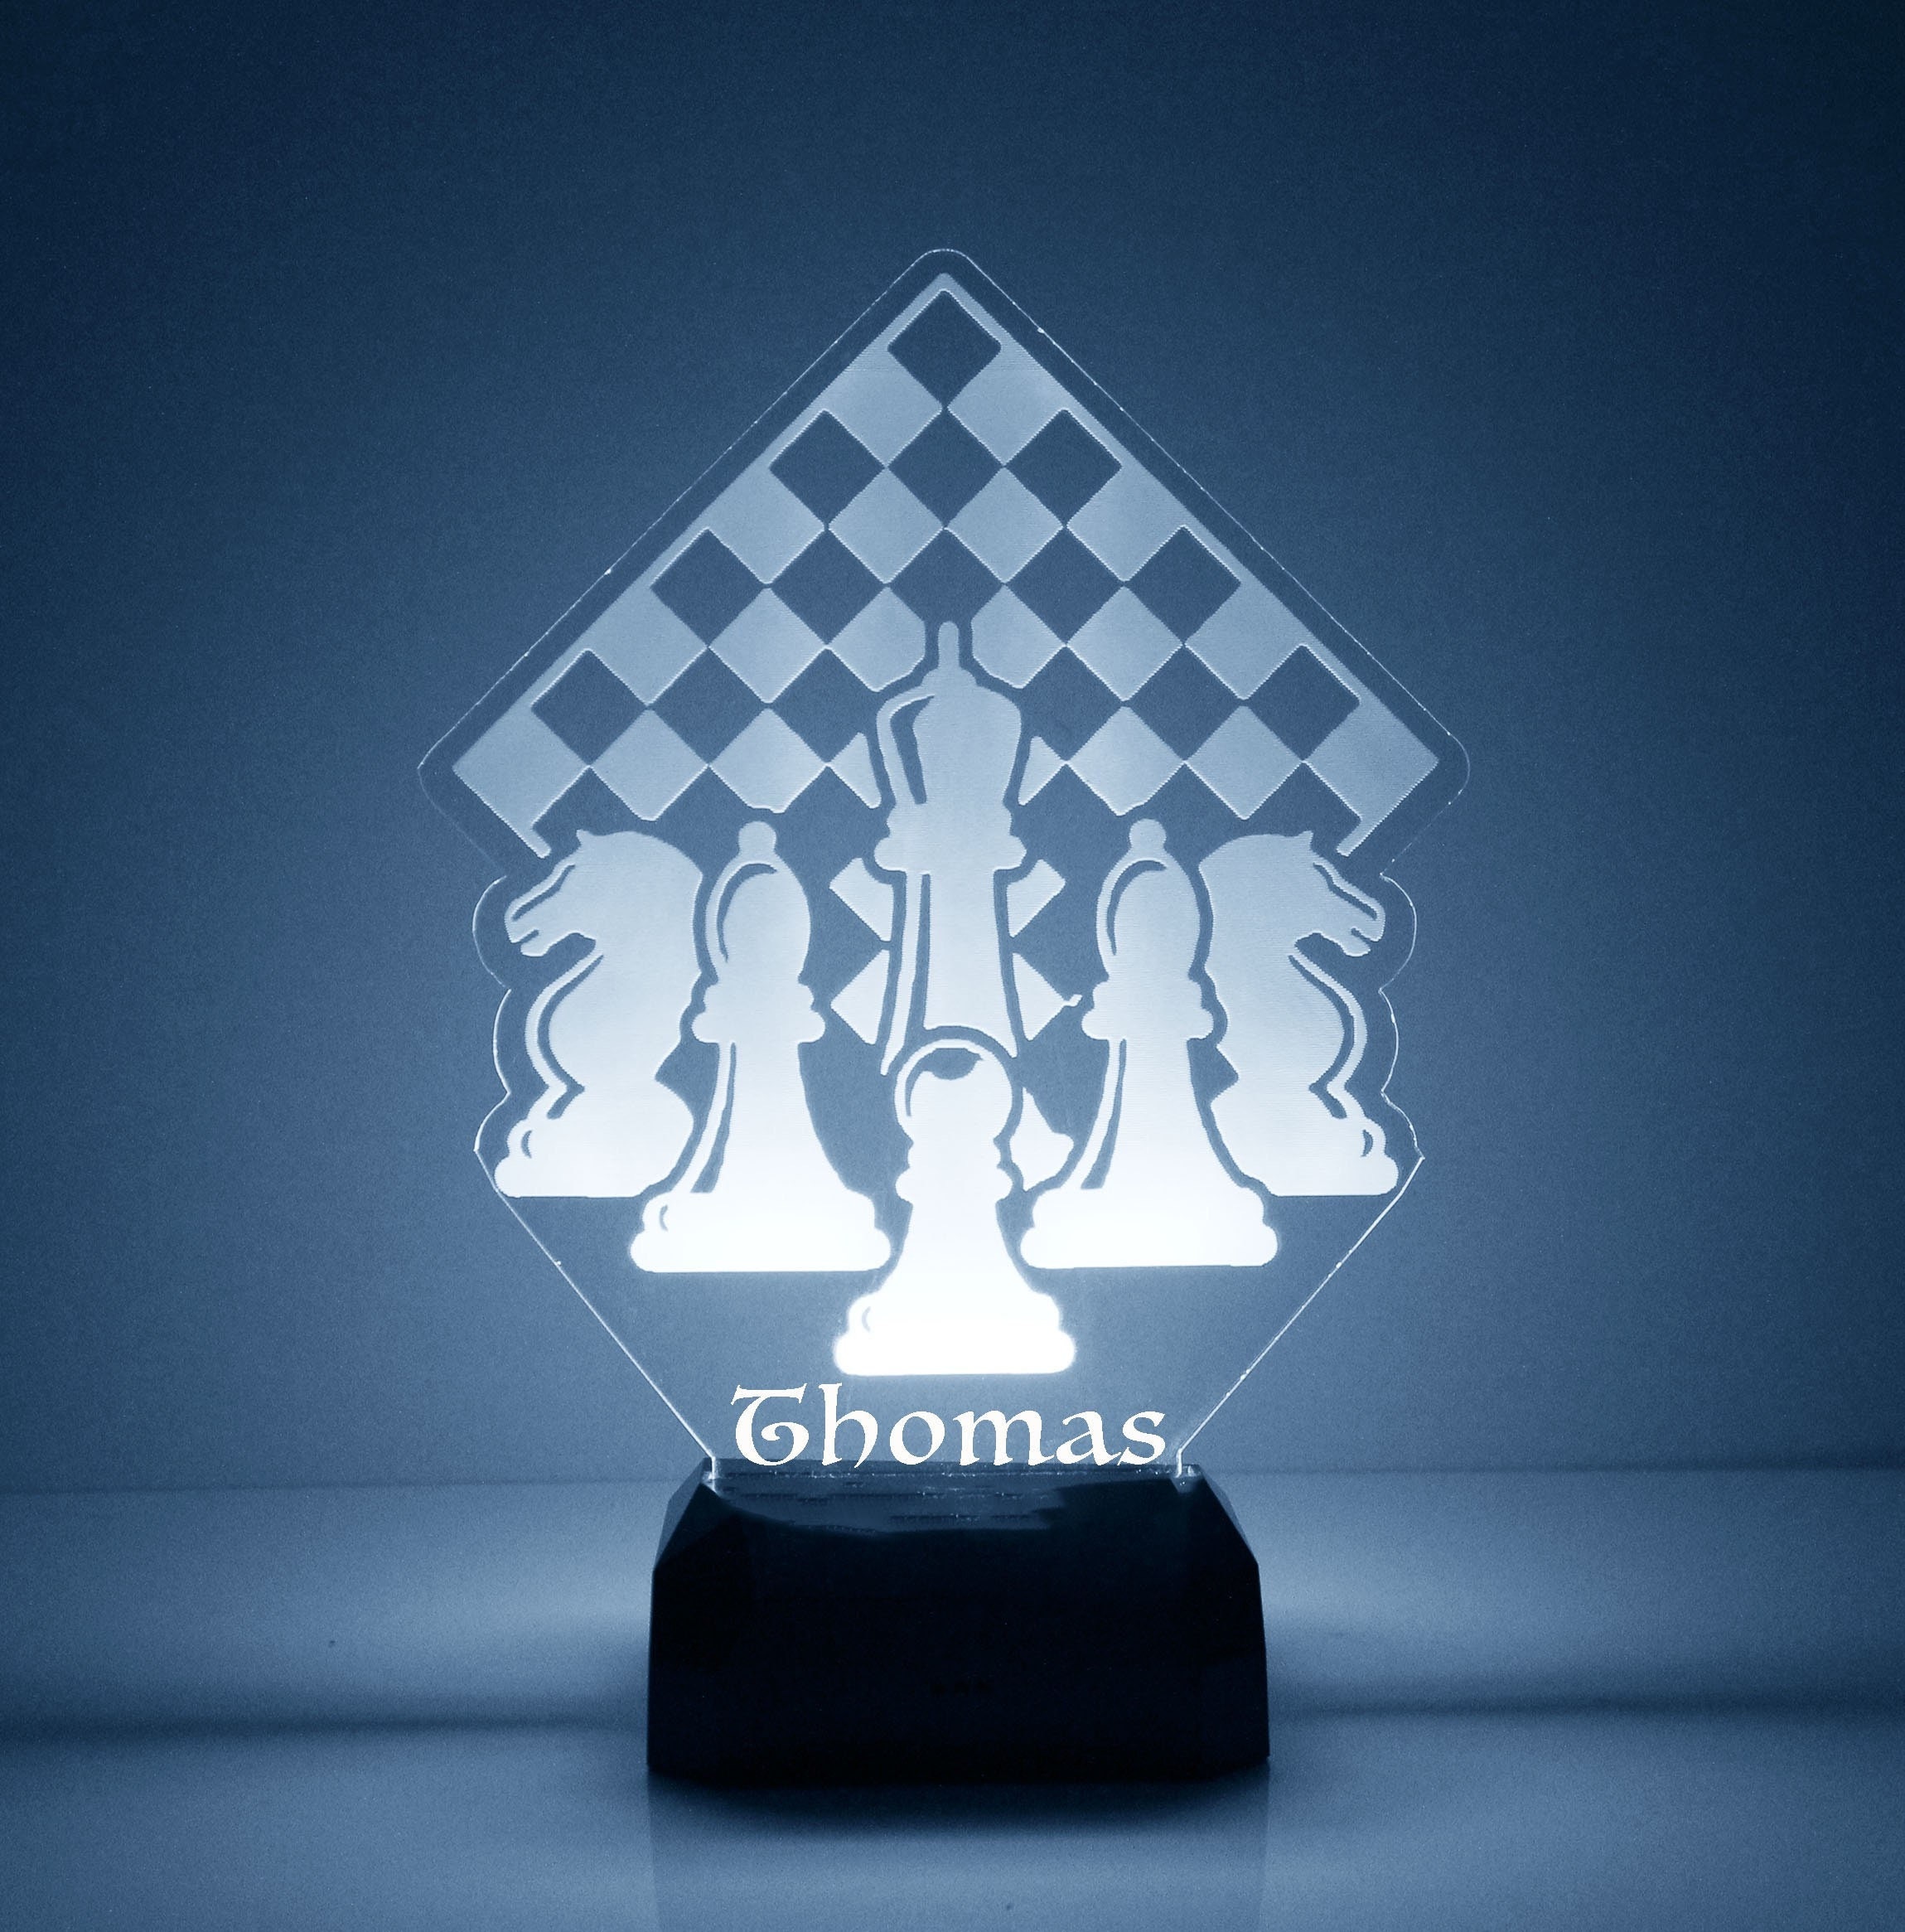 LED Desk Lamp Women FIDE Master WFM Full Name chess 3D 